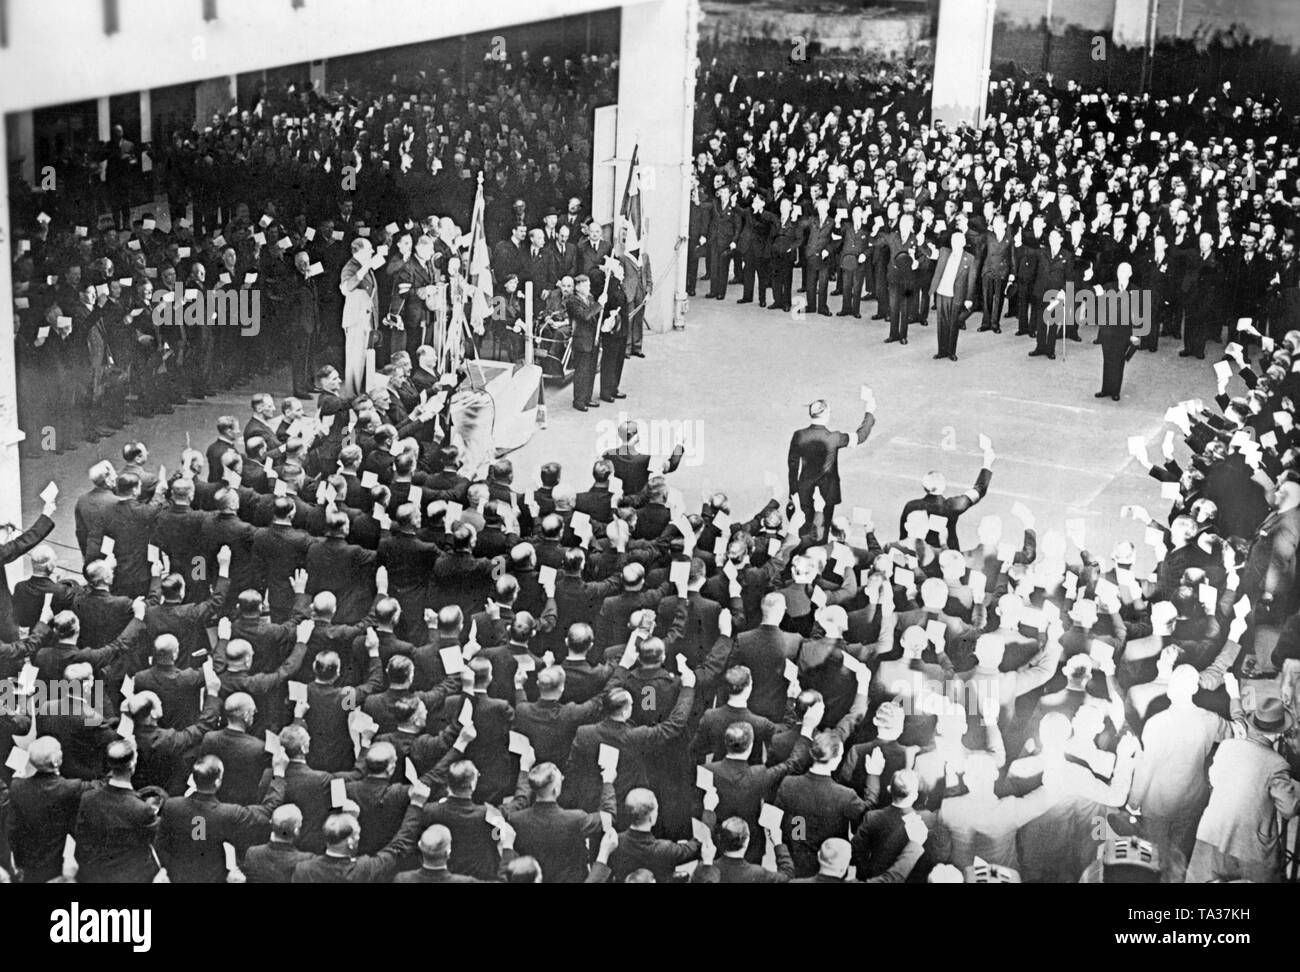 Vereidigung von 1.200 Mitgliedern der britischen Royal Legion am 8. August 1938, in London Stadion. Sie waren in der Tschechoslowakei geschickt, um die ordnungsgemäße Umsetzung der Vereinbarungen des Münchener Abkommens zu überwachen, und die Polizei Aufgaben wahrzunehmen. Stockfoto